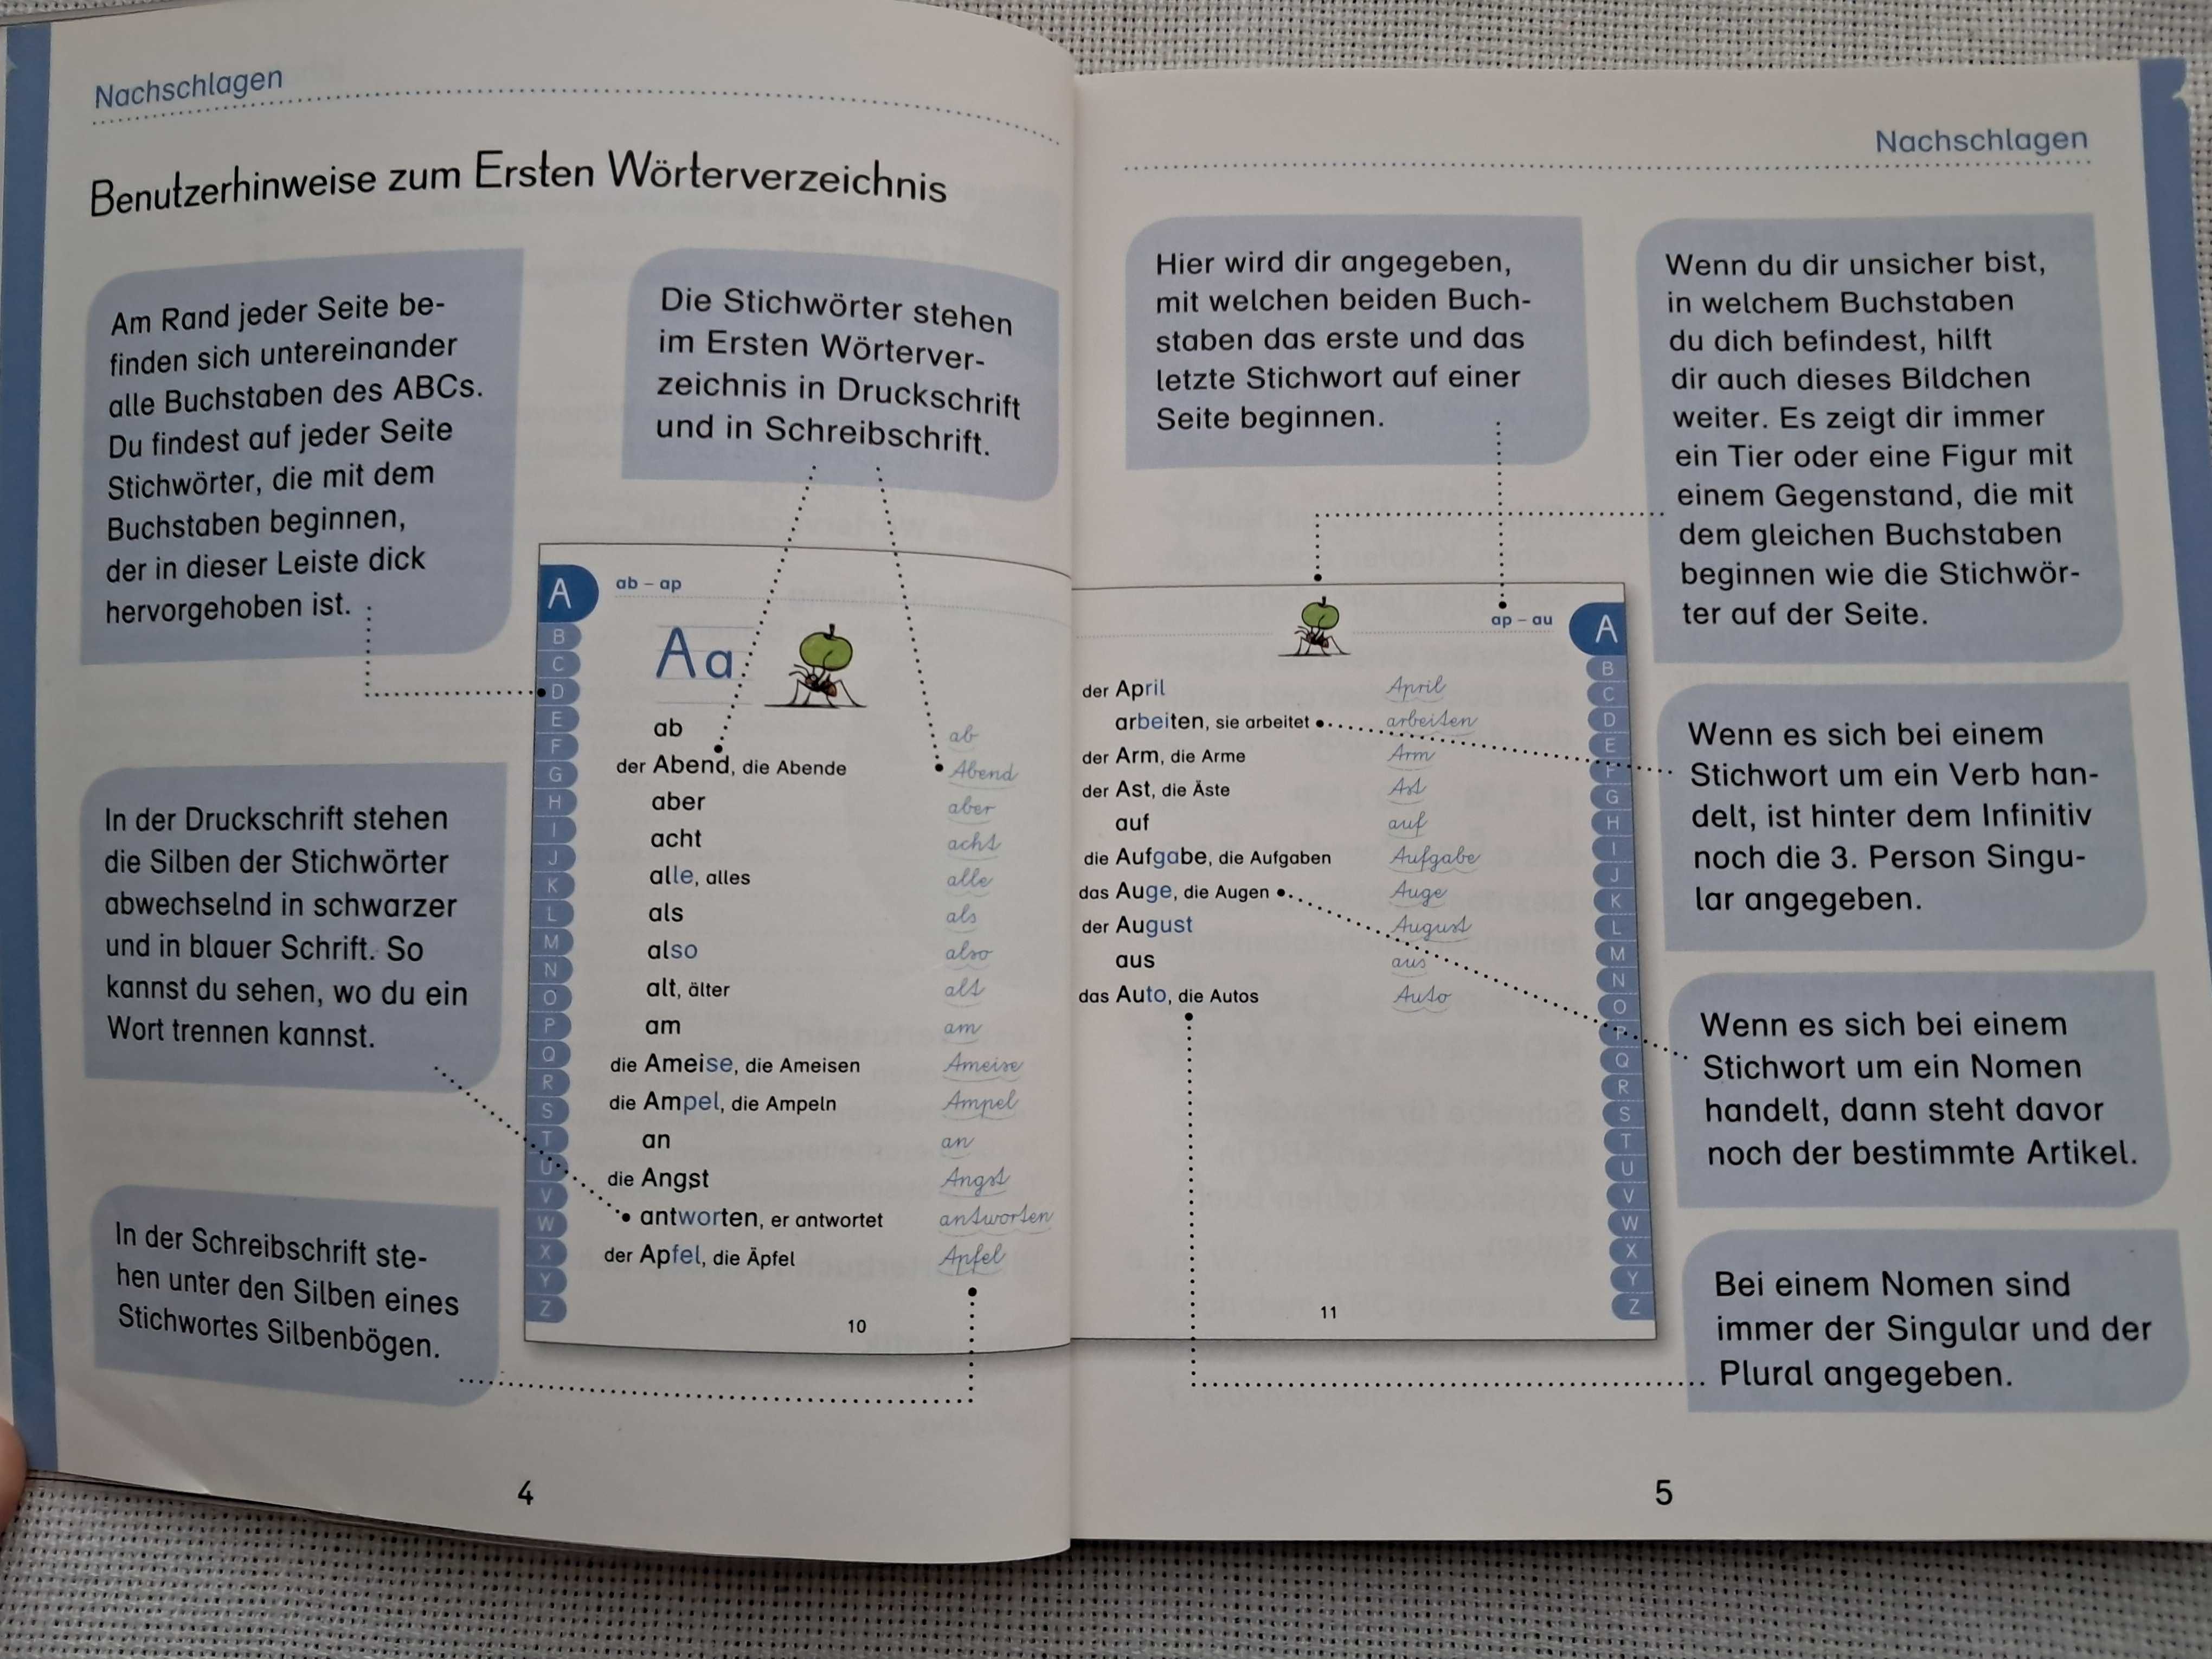 Детский словарь немецкого языка Findefix для младшей школы